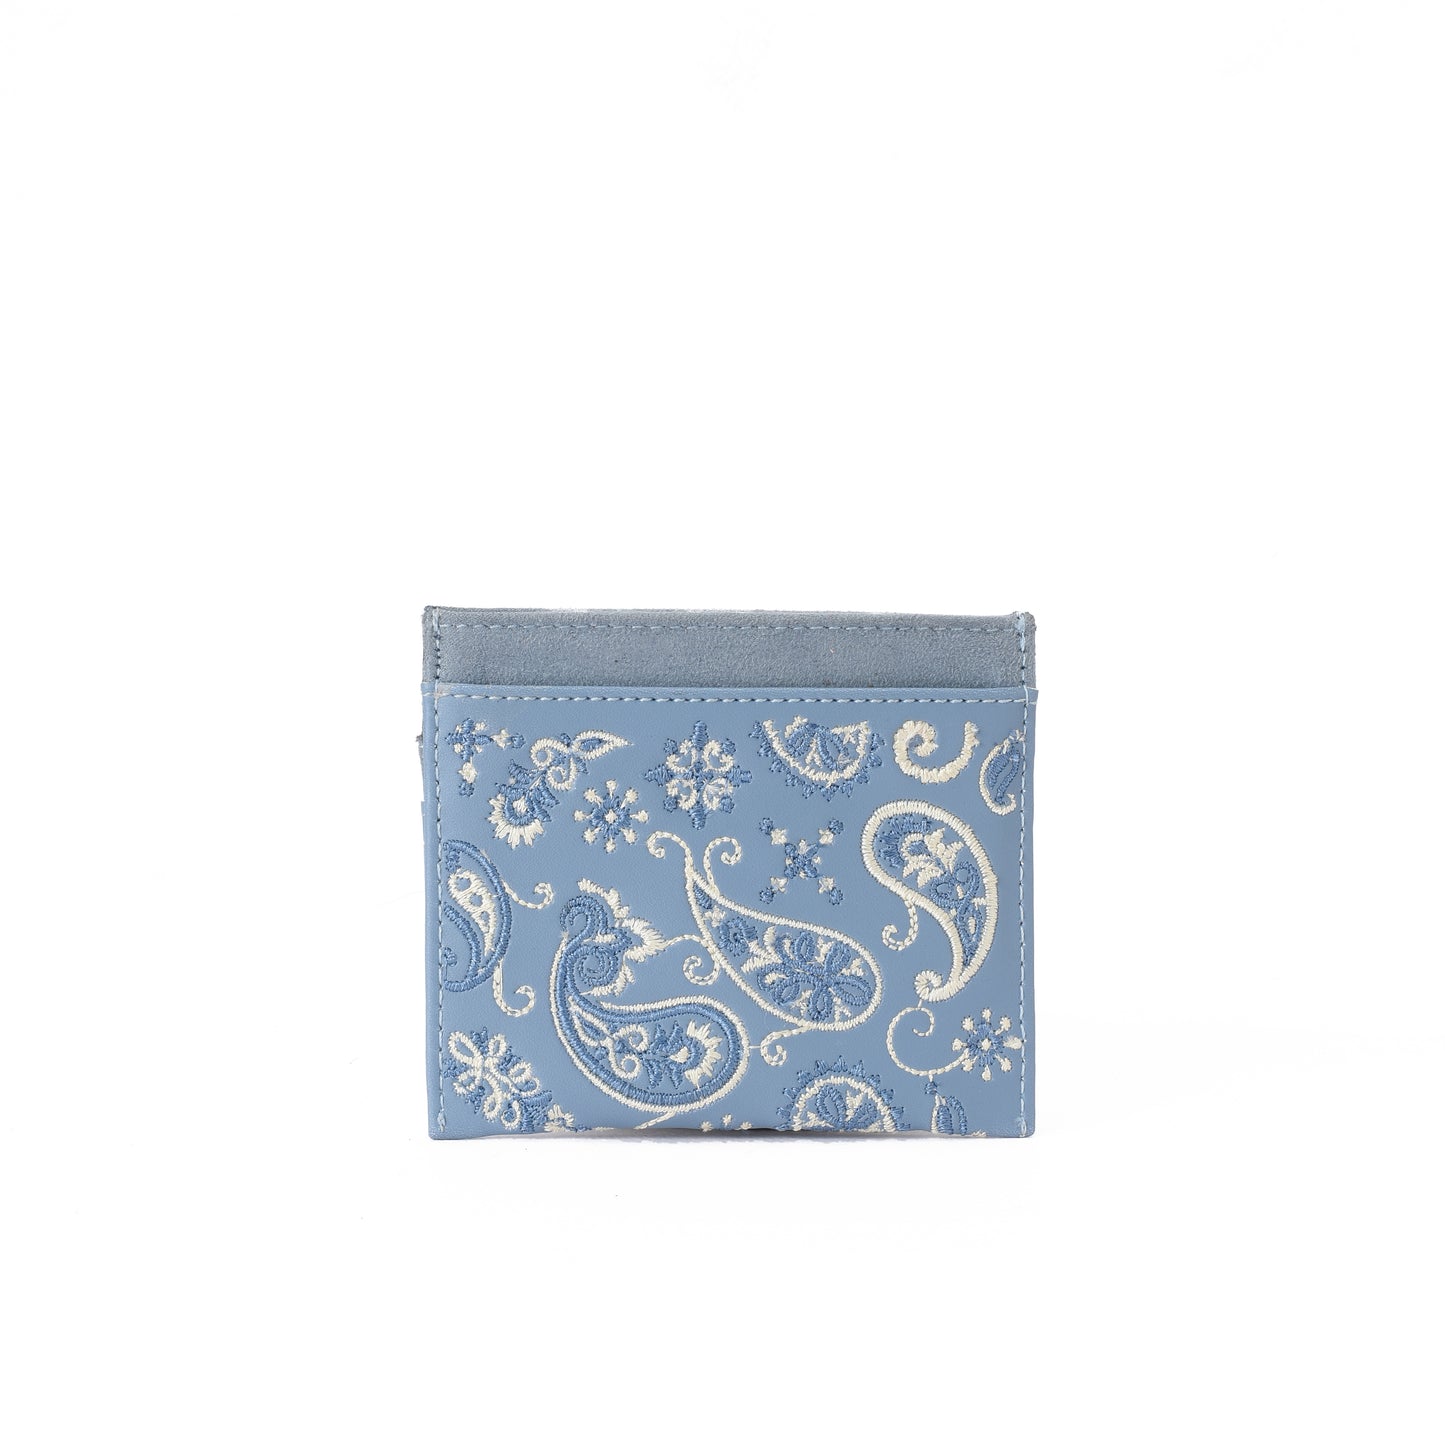 Baby Blue voguish card holder - Code 517